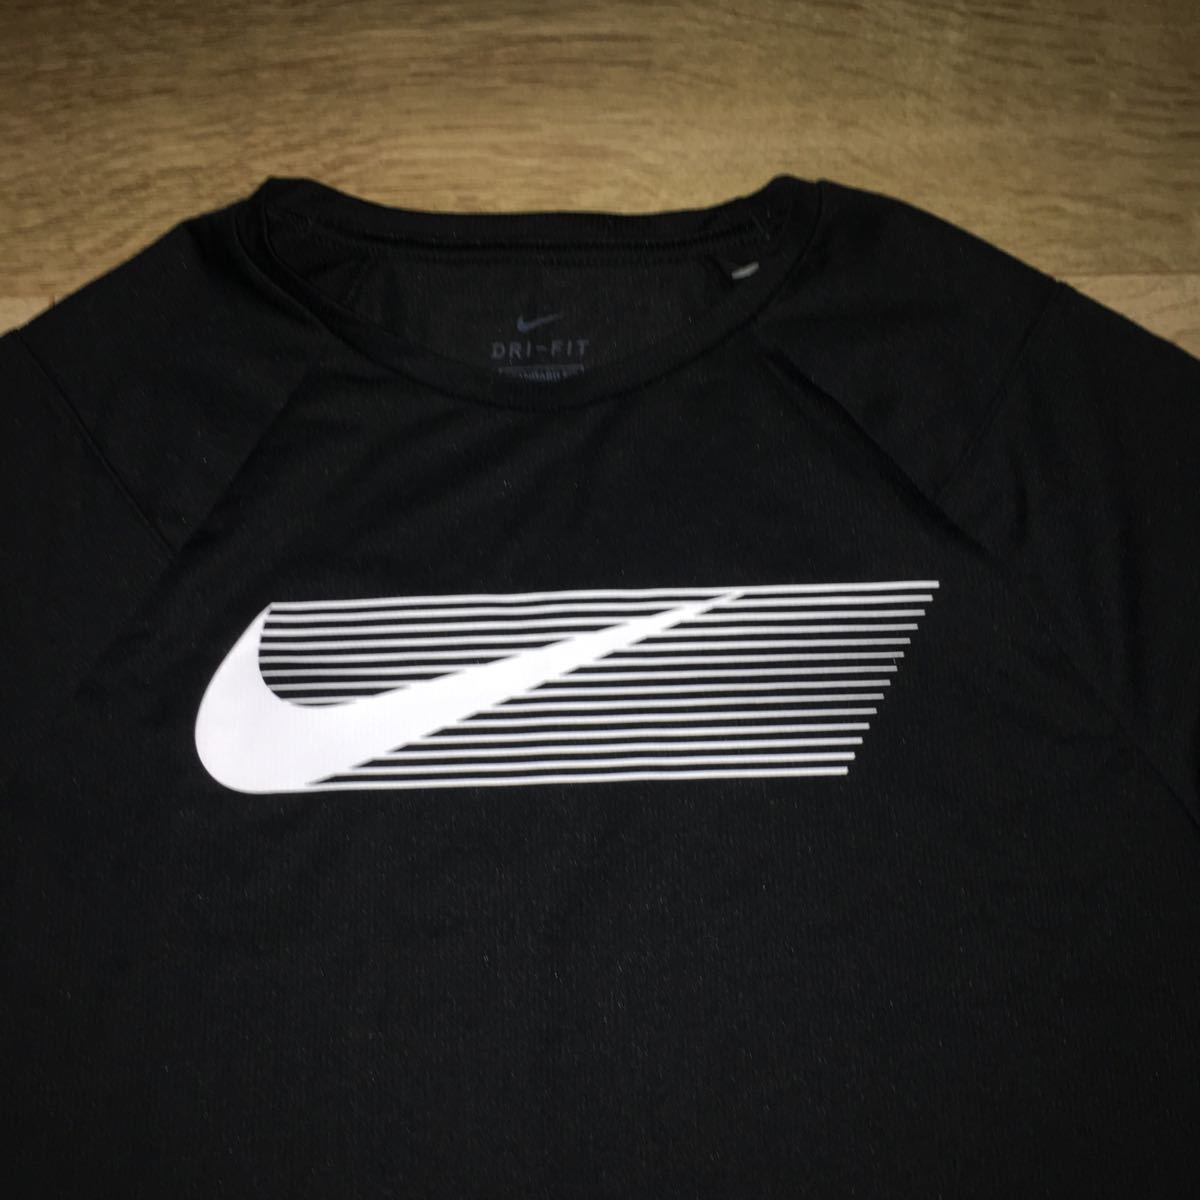  Nike рубашка с длинным рукавом 155|75A прекрасный товар 